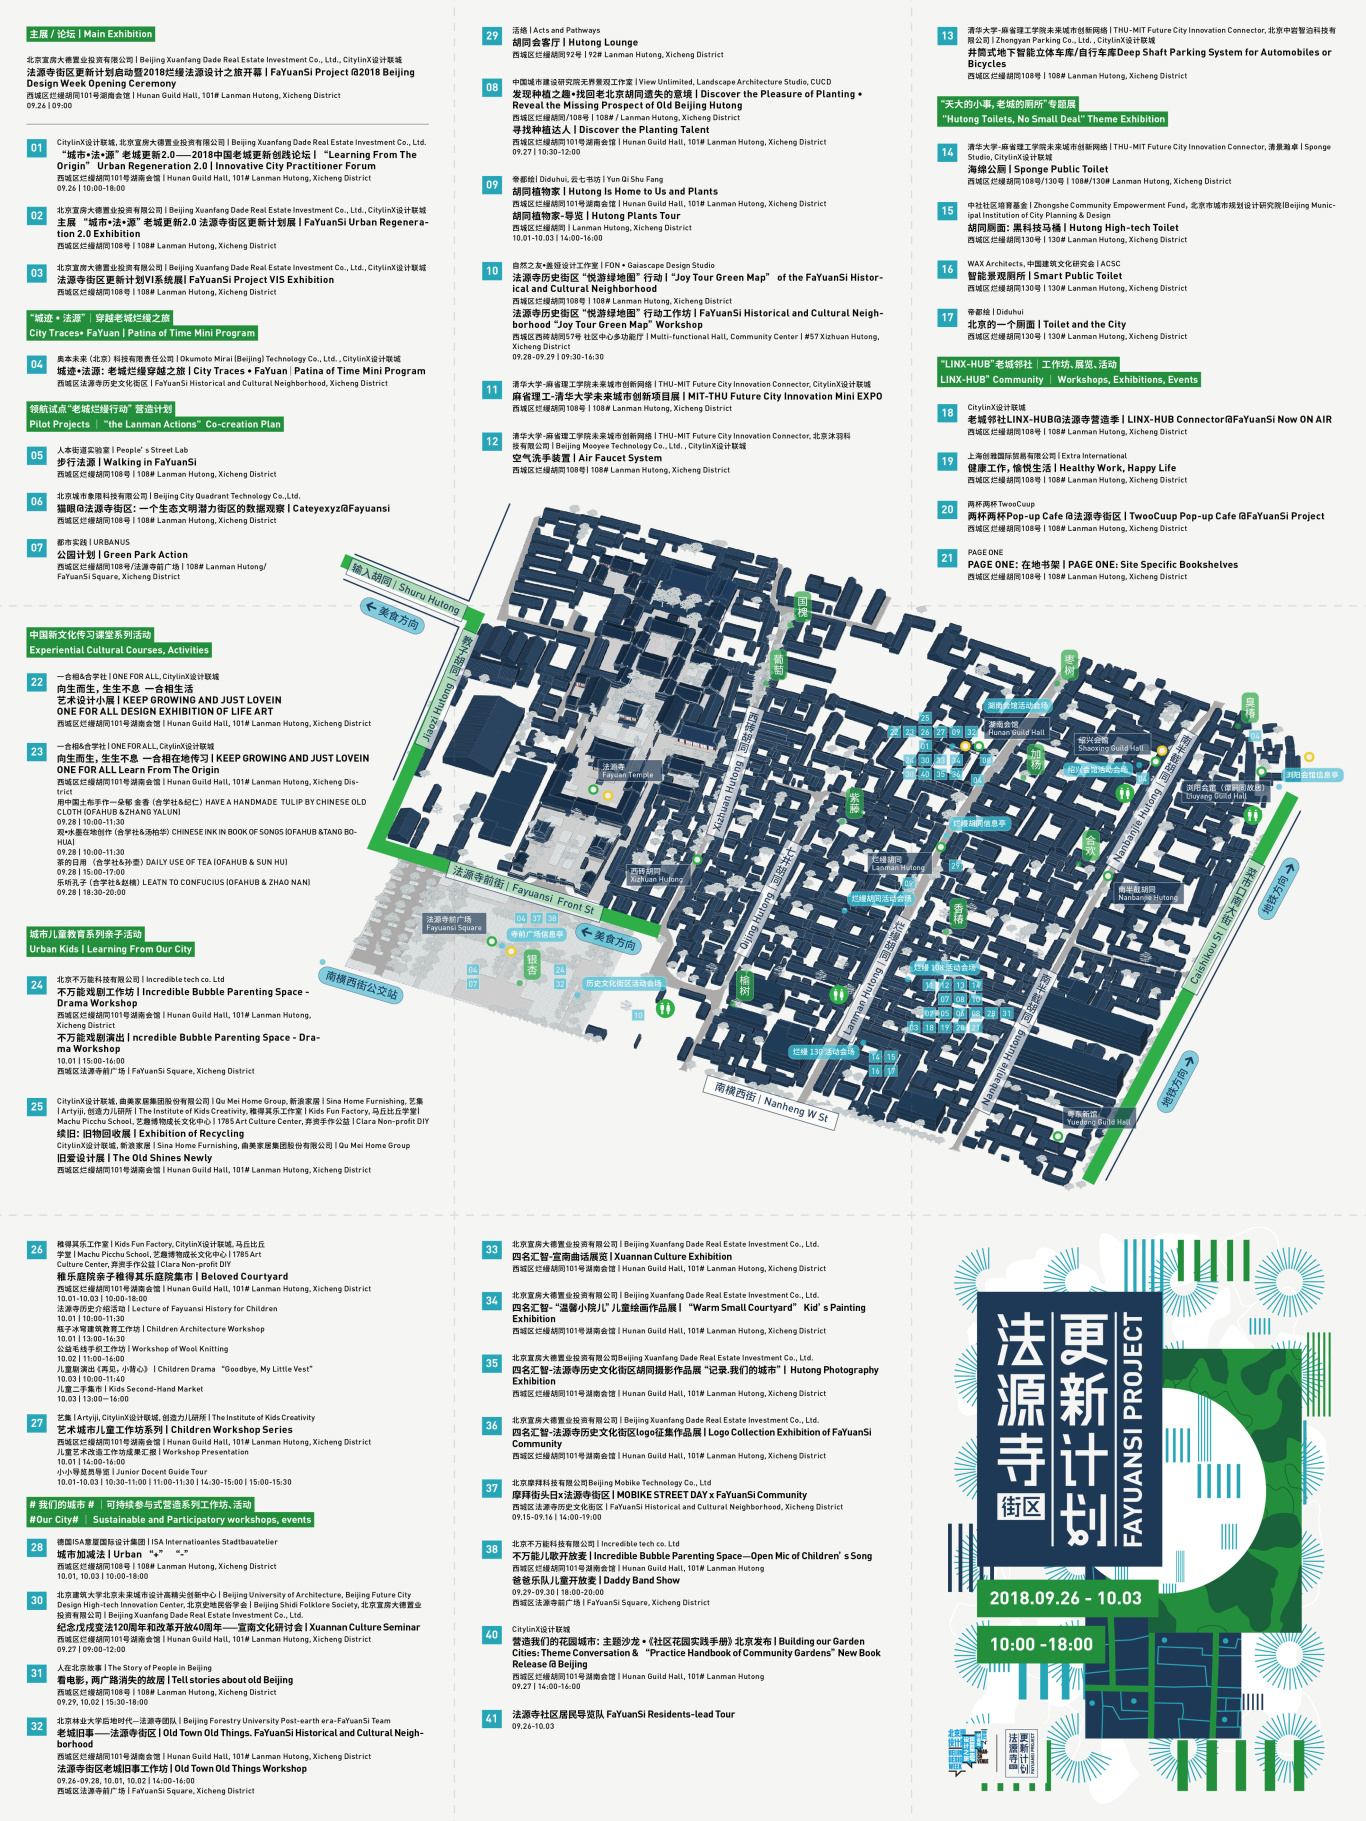 北京设计周分会场法源寺更新计划品牌活动VI全案图30